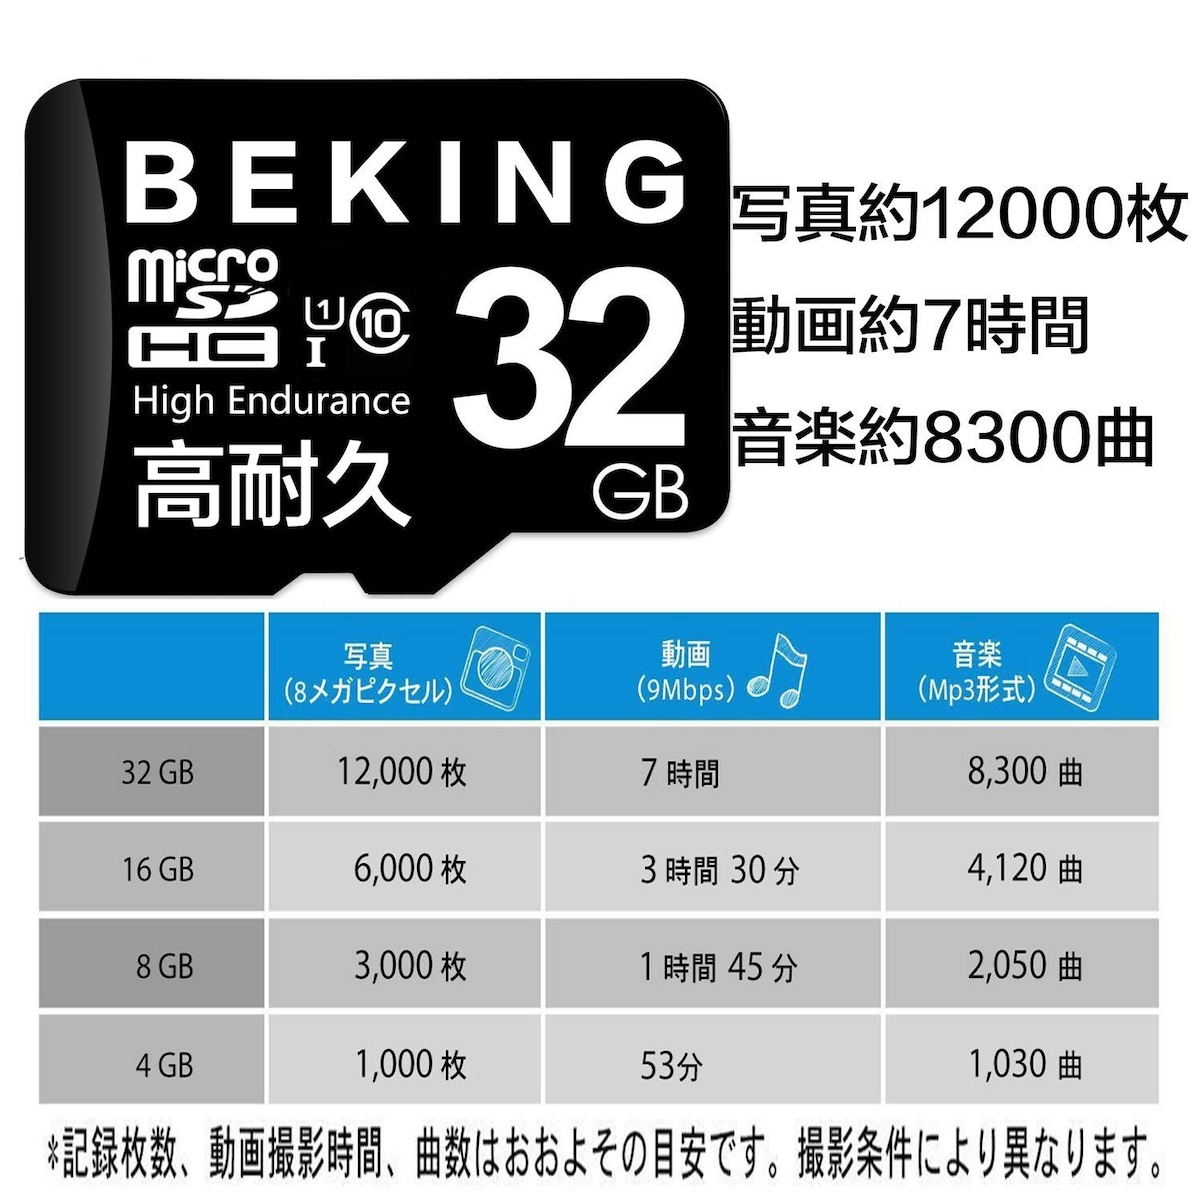  高耐久マイクロSDカード 32GB画像4 